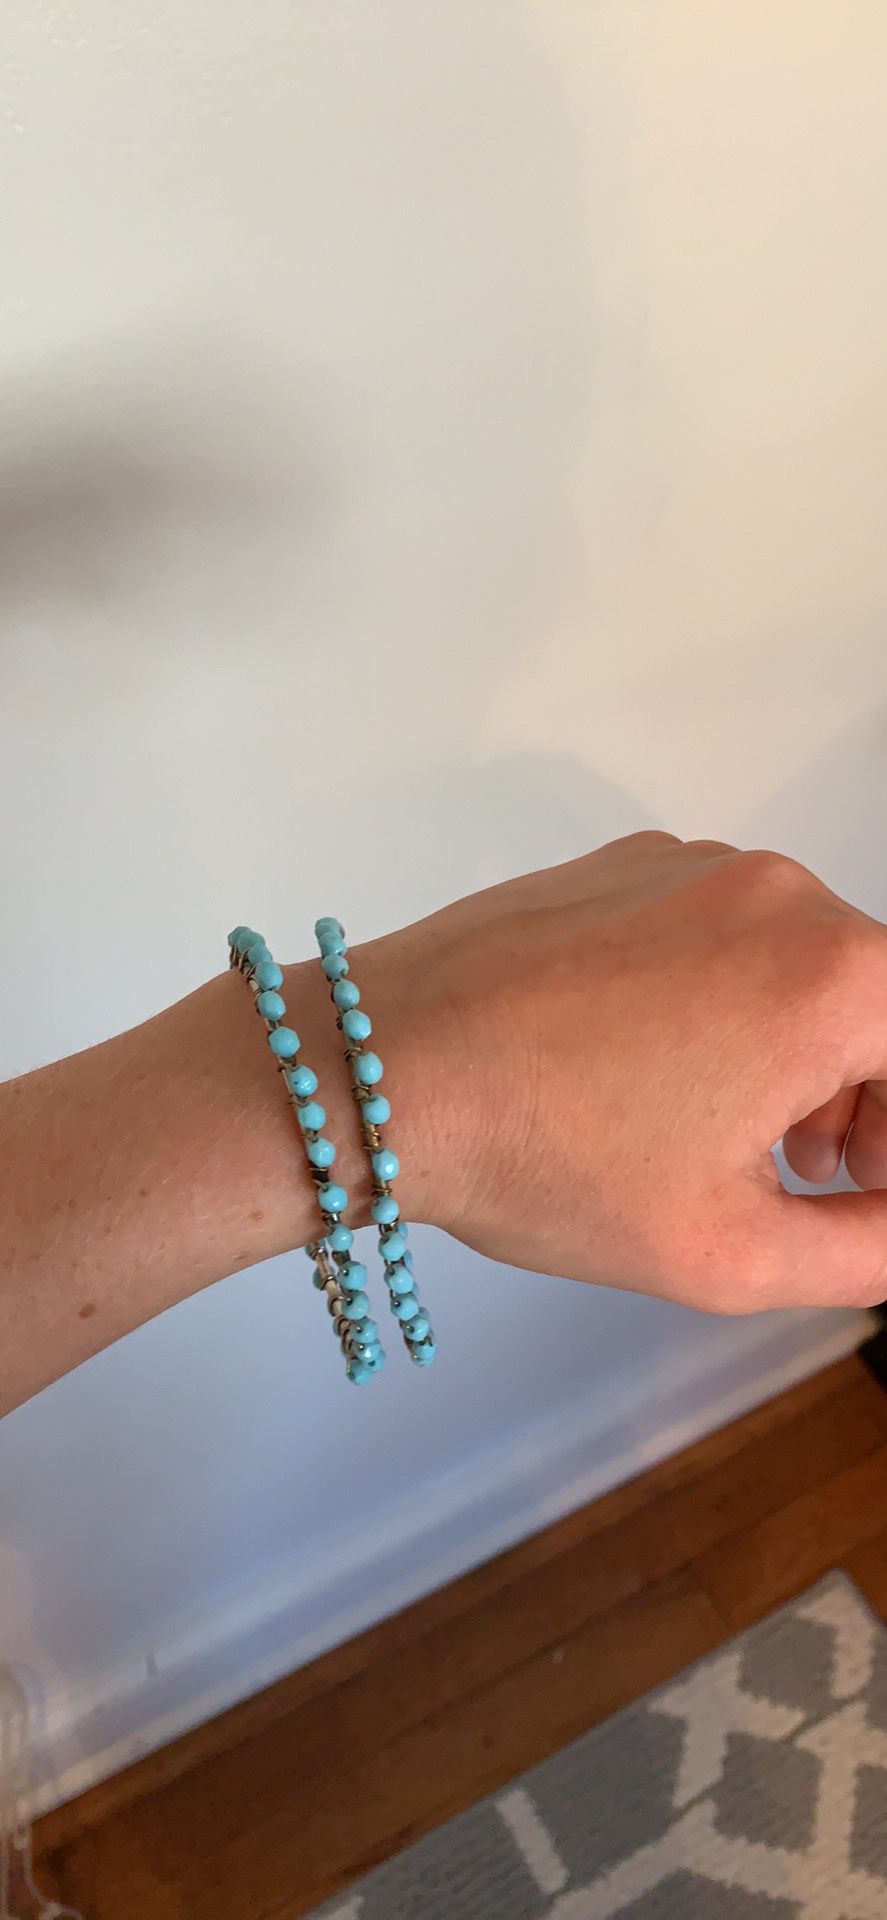 Turquoise bangle bracelet